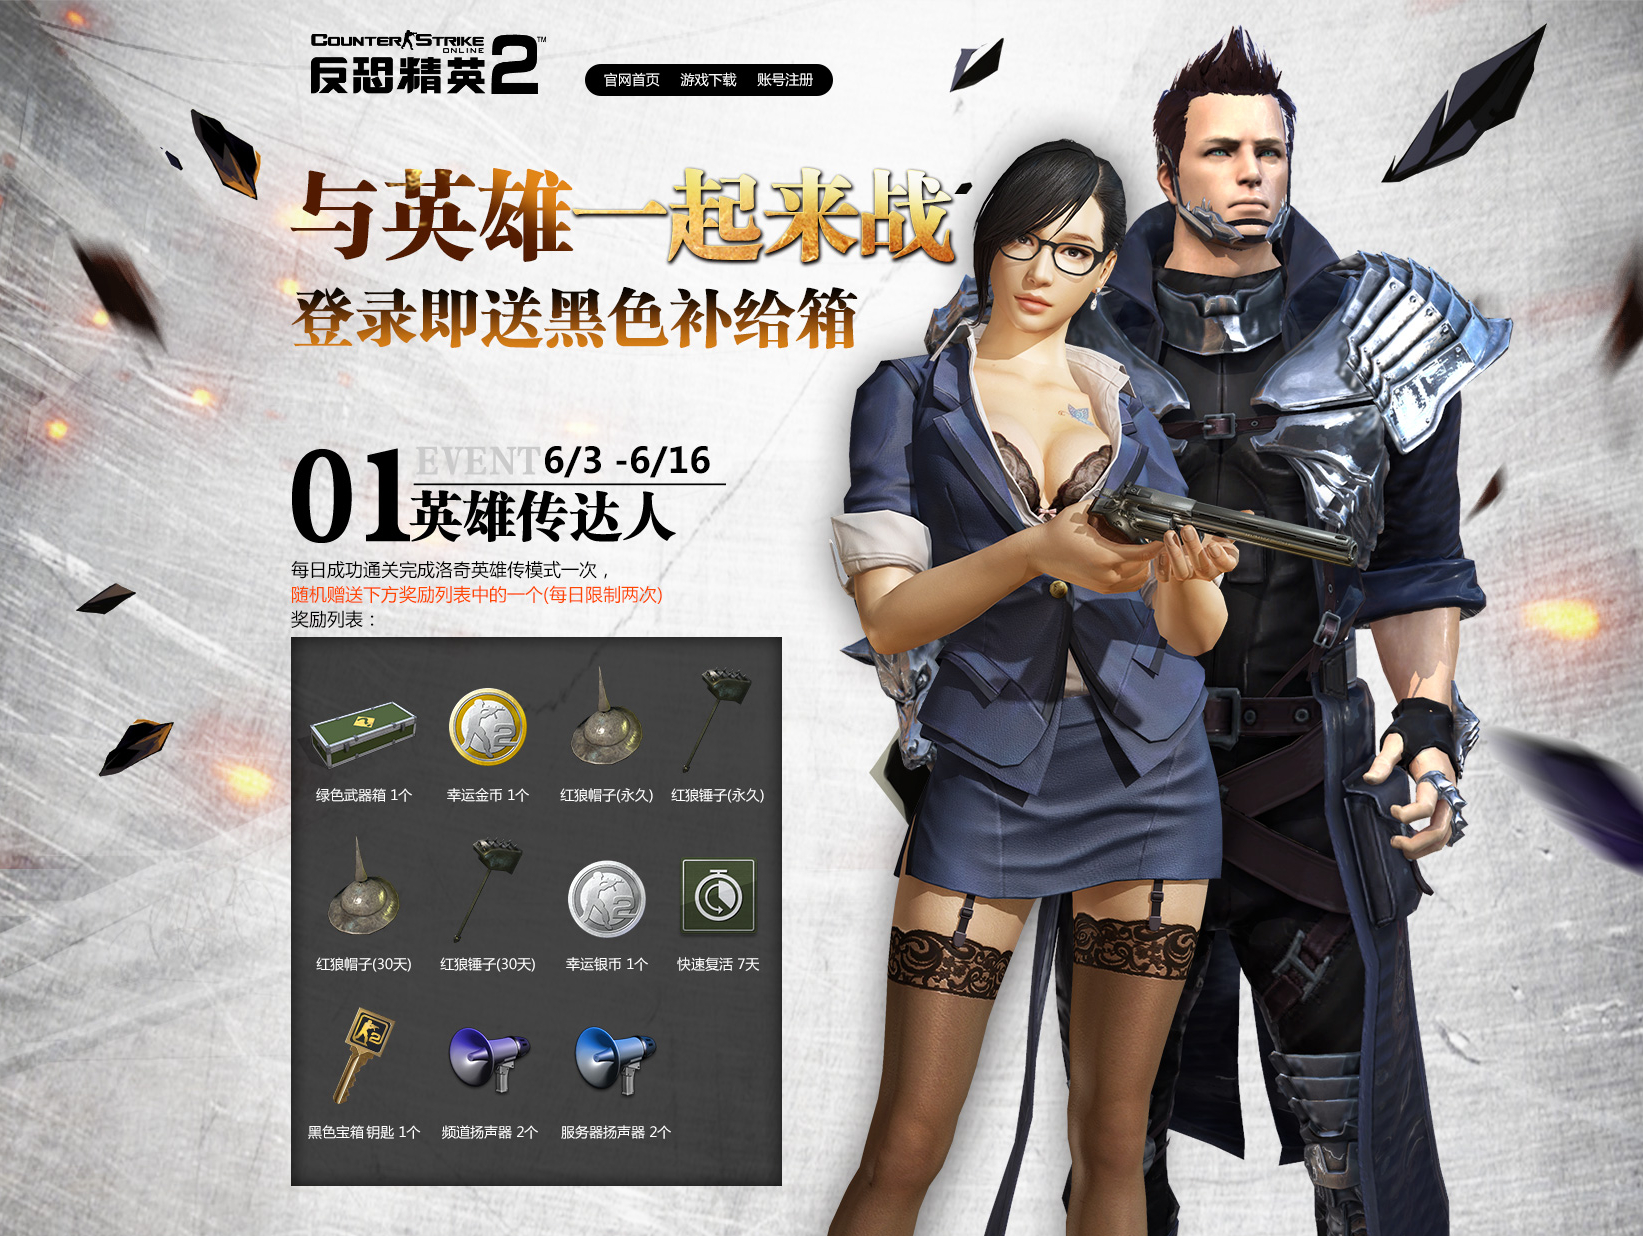 Image - Yuri2 choijiyoon2 poster korea cso2.png | Counter Strike Online ...